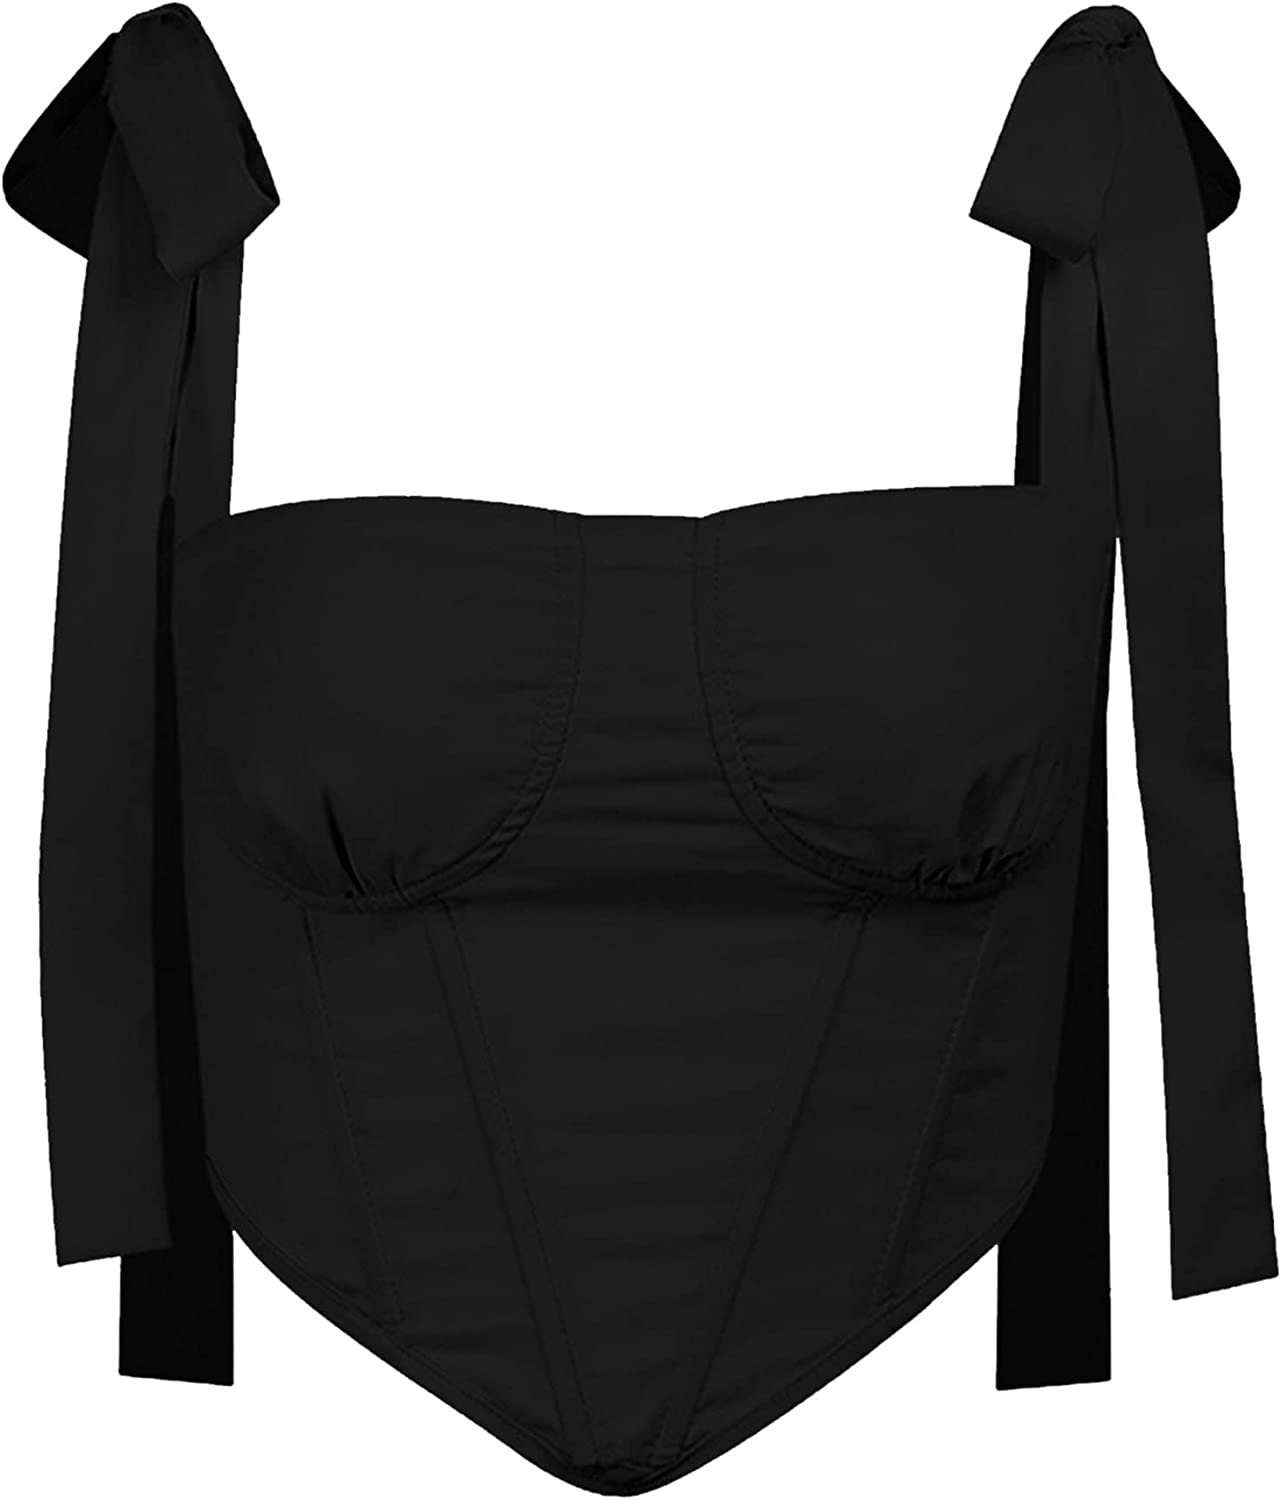 Avanova Women's Sexy Bustier Crop Top Strappy Tie up Shoulder Sleeveless Asymmetrical Clubwear